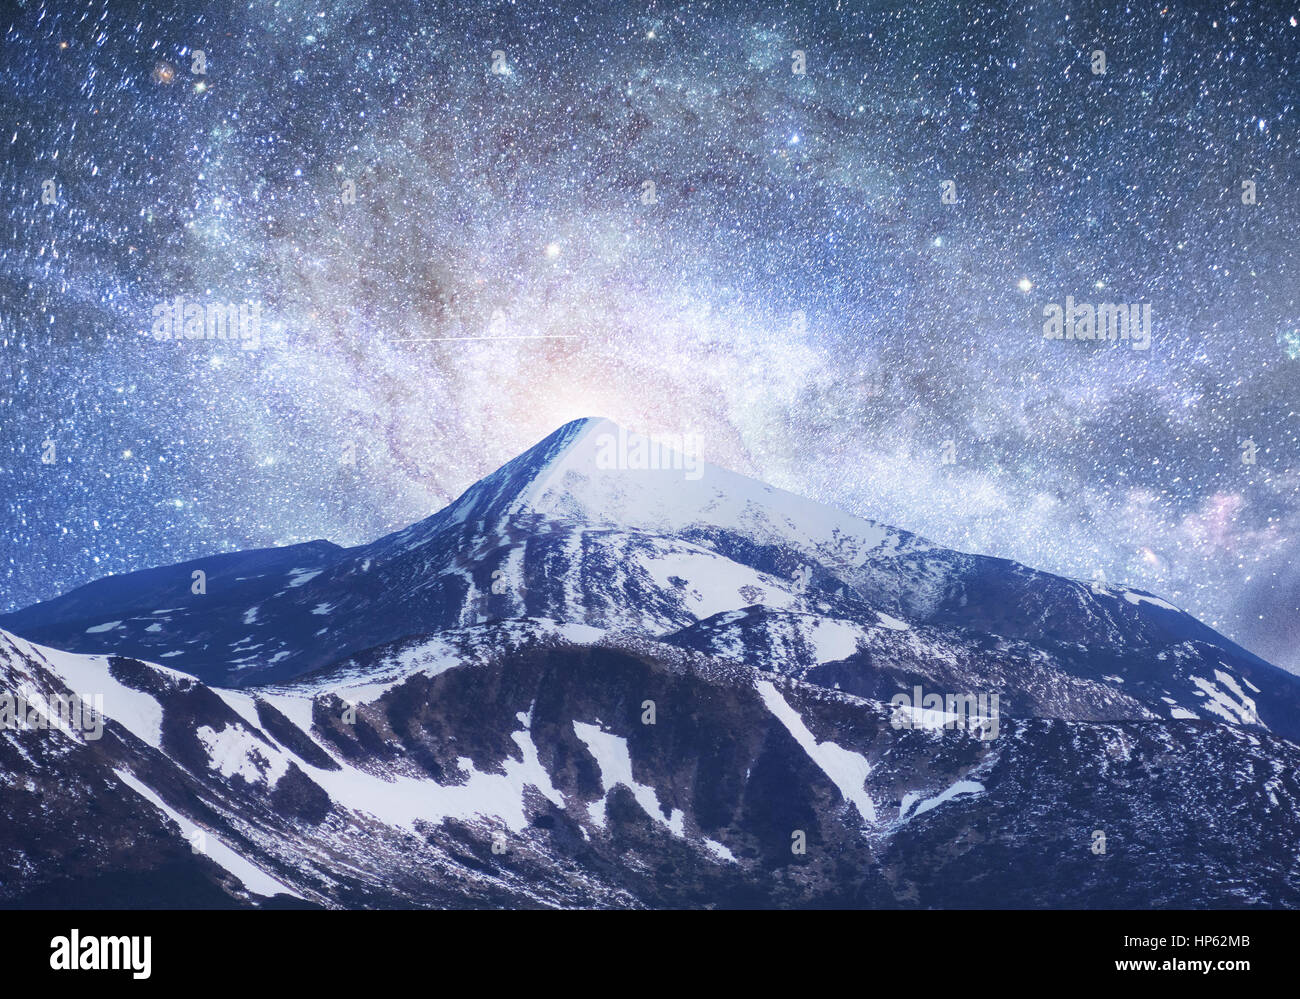 Fantastico cielo stellato. Bellissimo paesaggio invernale e snow-capped Foto Stock